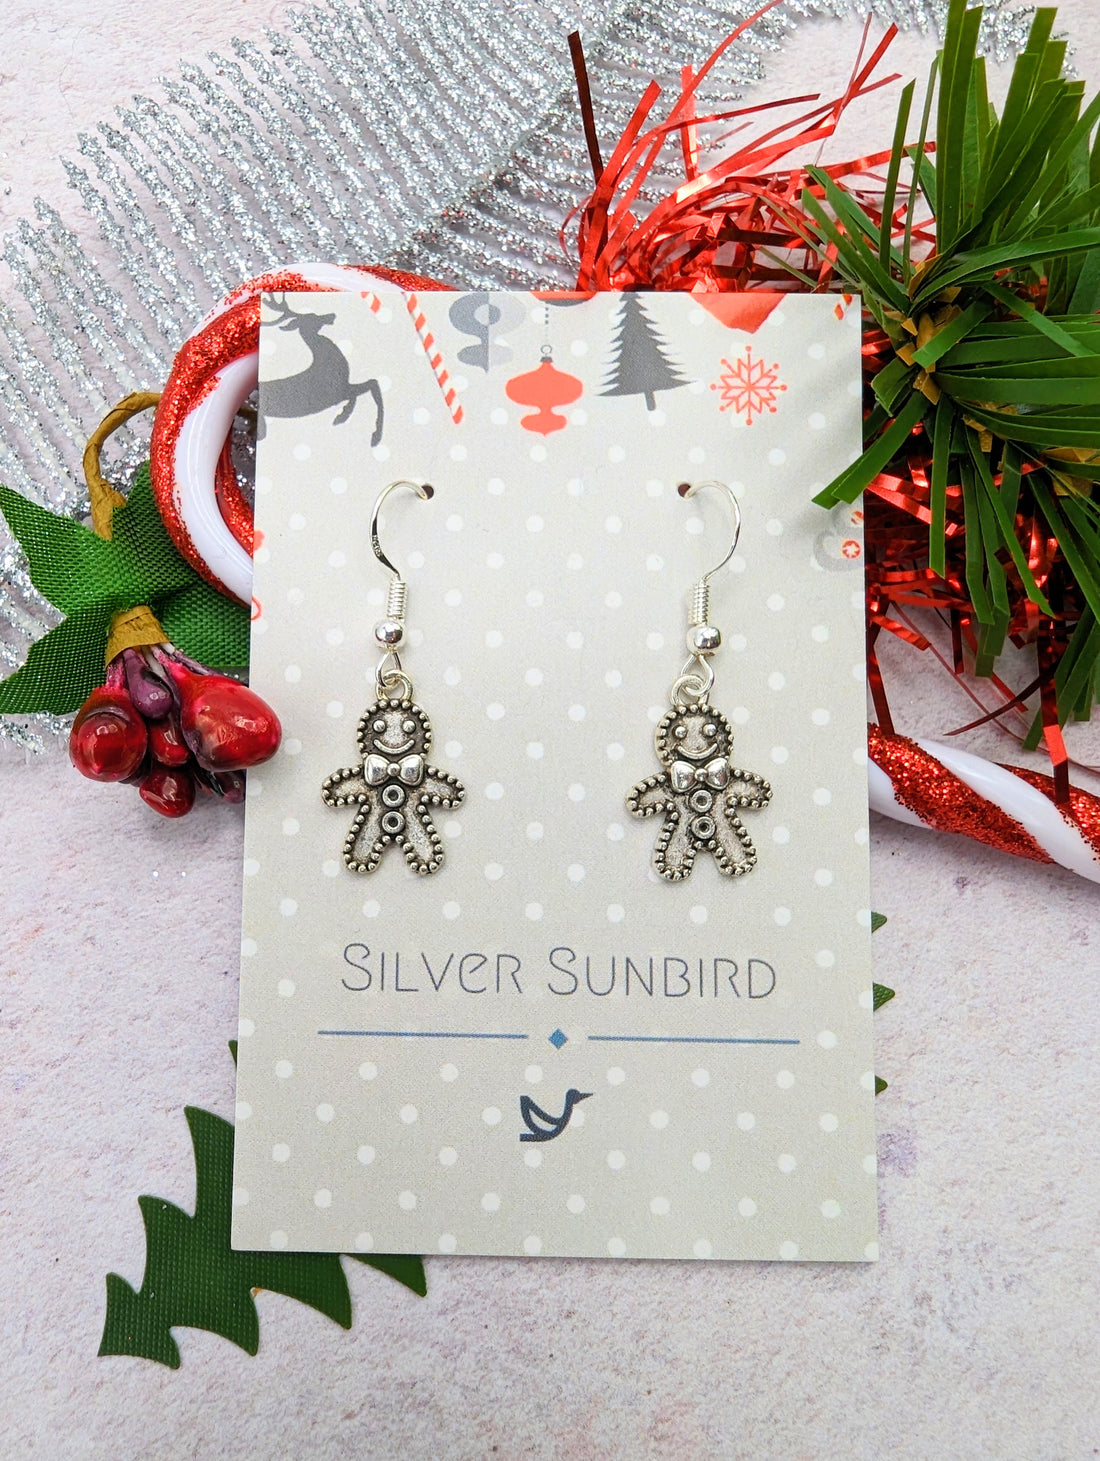 Jolly Gingerbread Men Earrings - Silver Sunbird Christmas Earrings